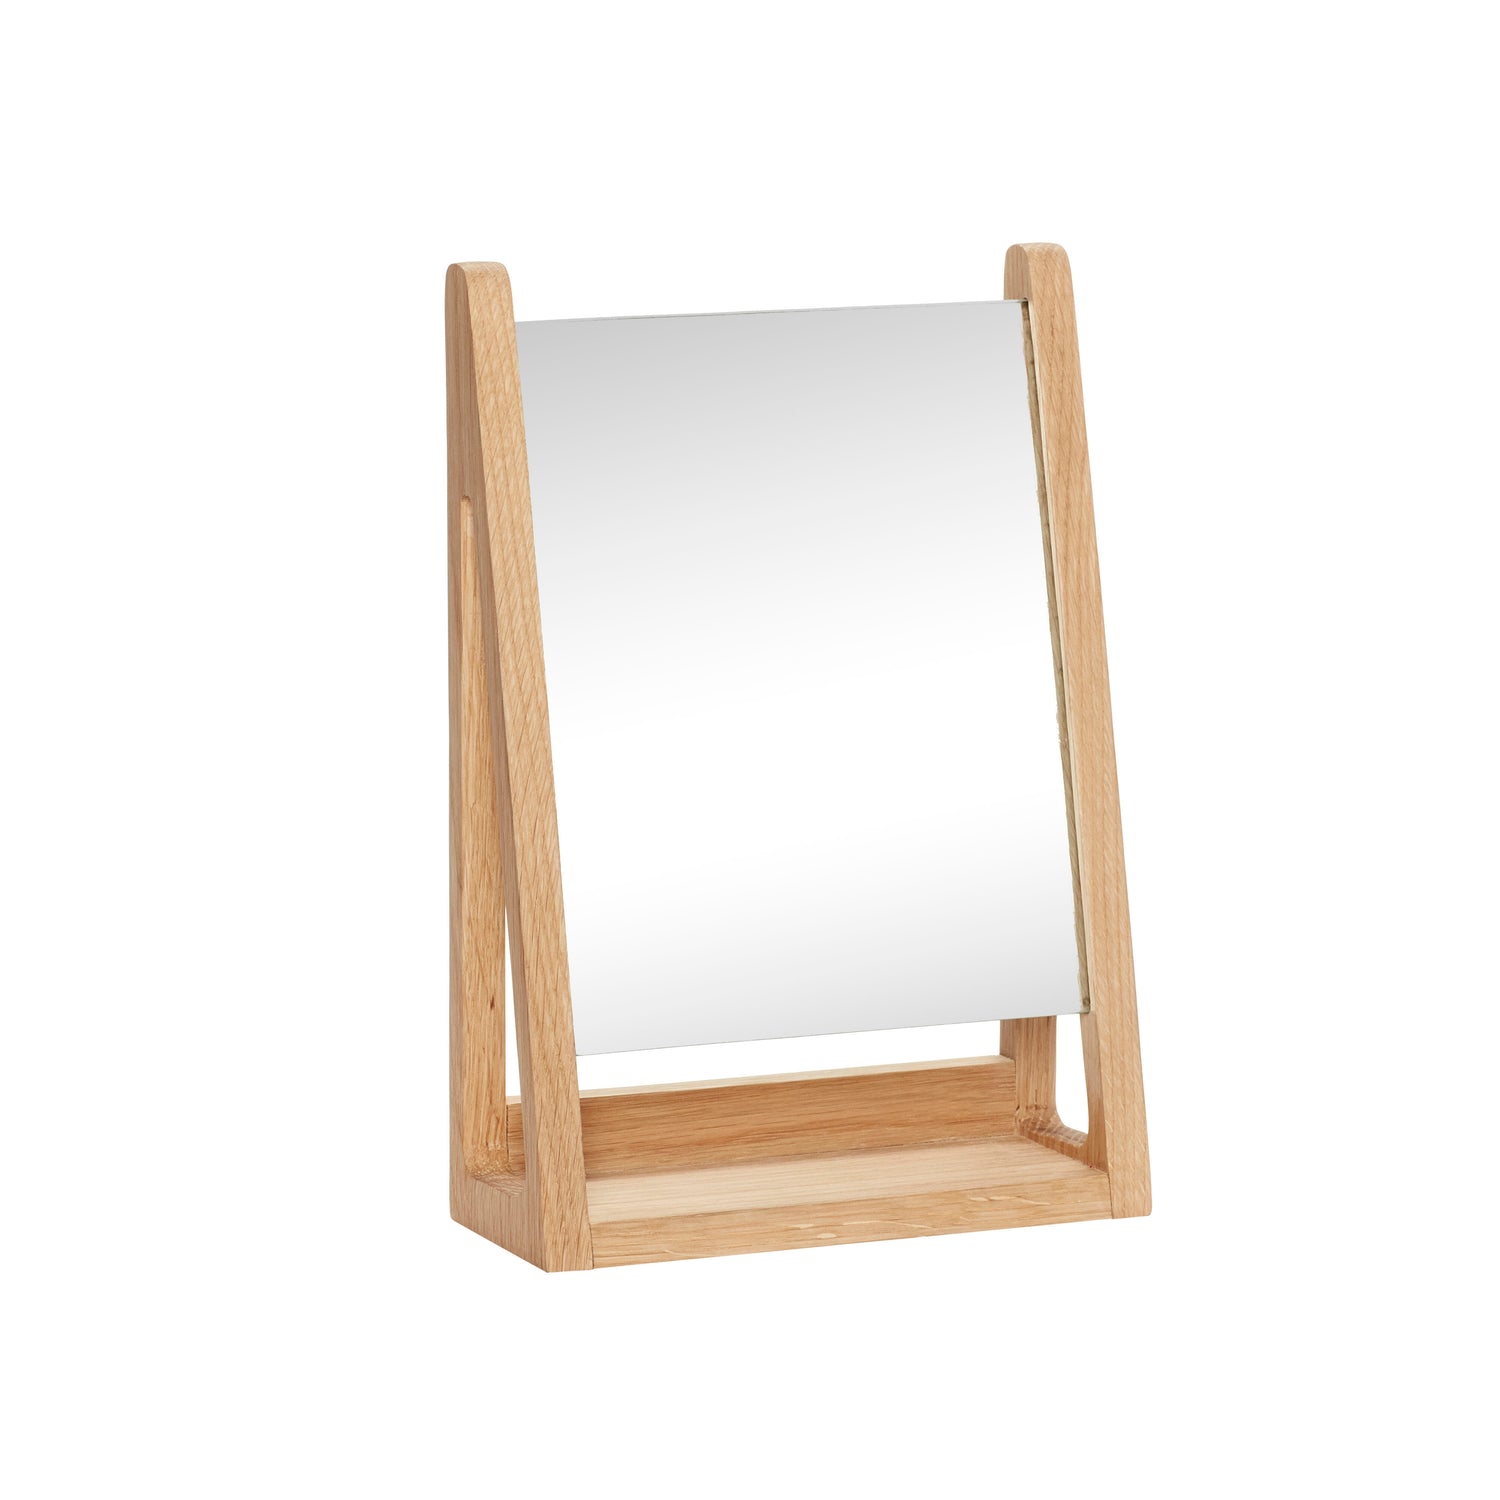 Hübsch Bordspejl, firkantet, FSC, natur - 22x9xh32cm - DesignGaragen.dk.